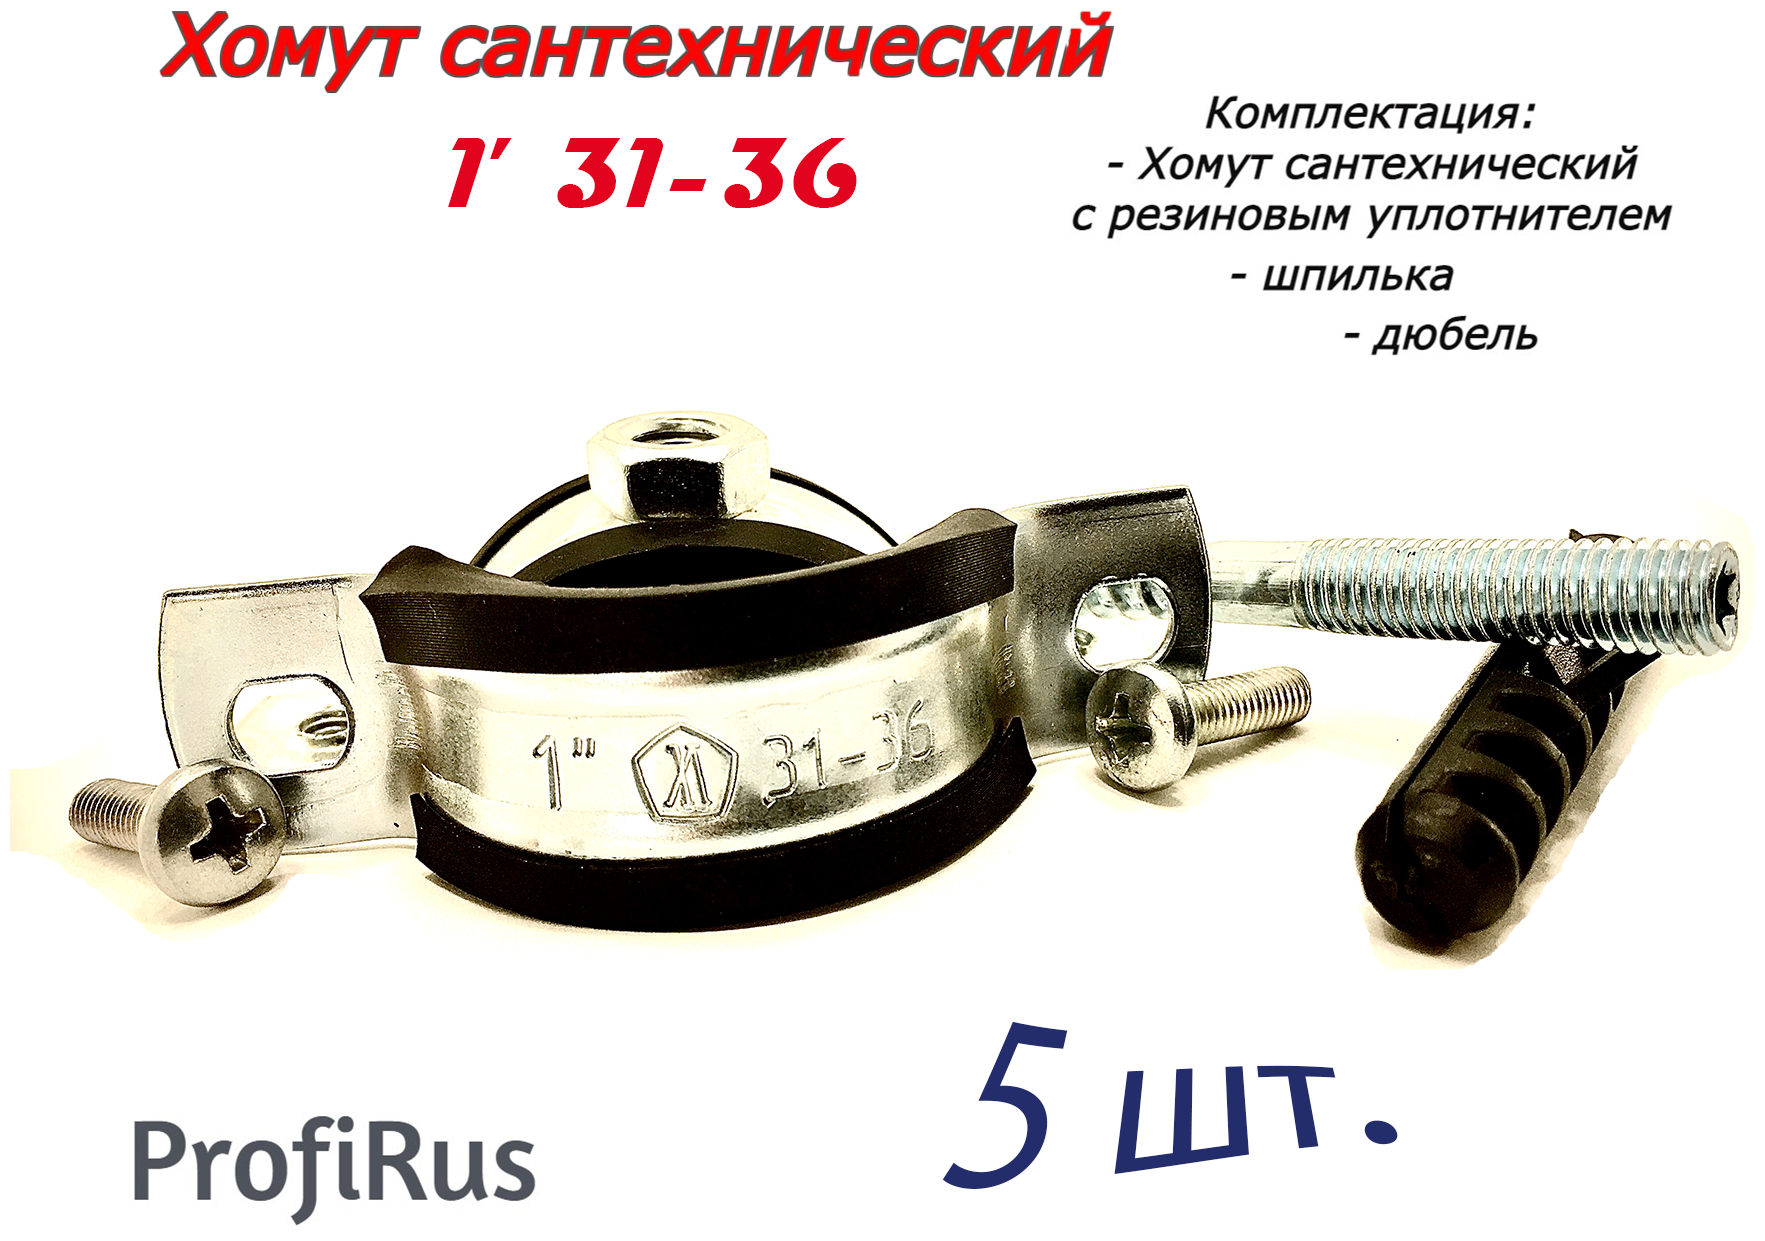 Хомут сантехнический D1"31-36 (5 шт) для труб с резиновым уплотнением шпилькой и дюбелем